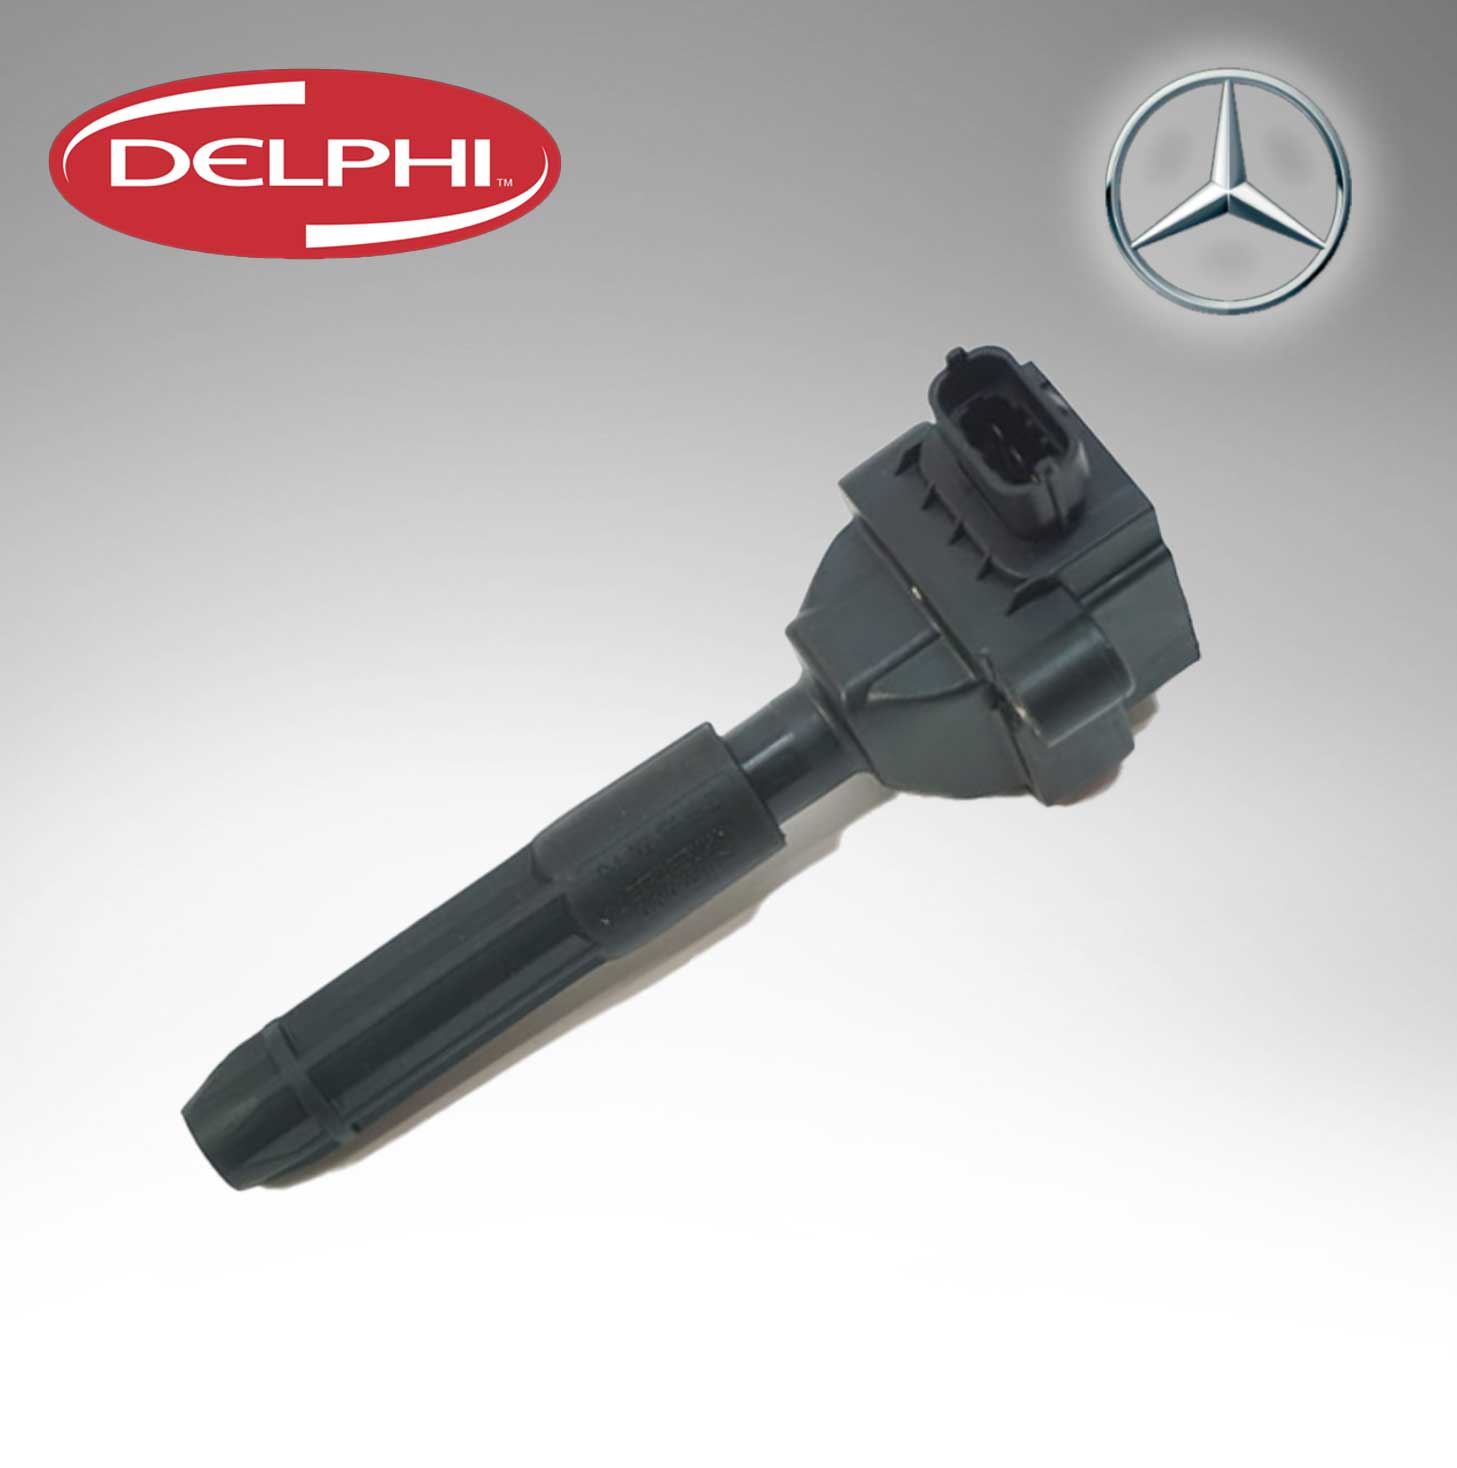 Delphi IGNITION COIL GN-10604 FOR Mercedes Benz C230 SLK230  0001502880